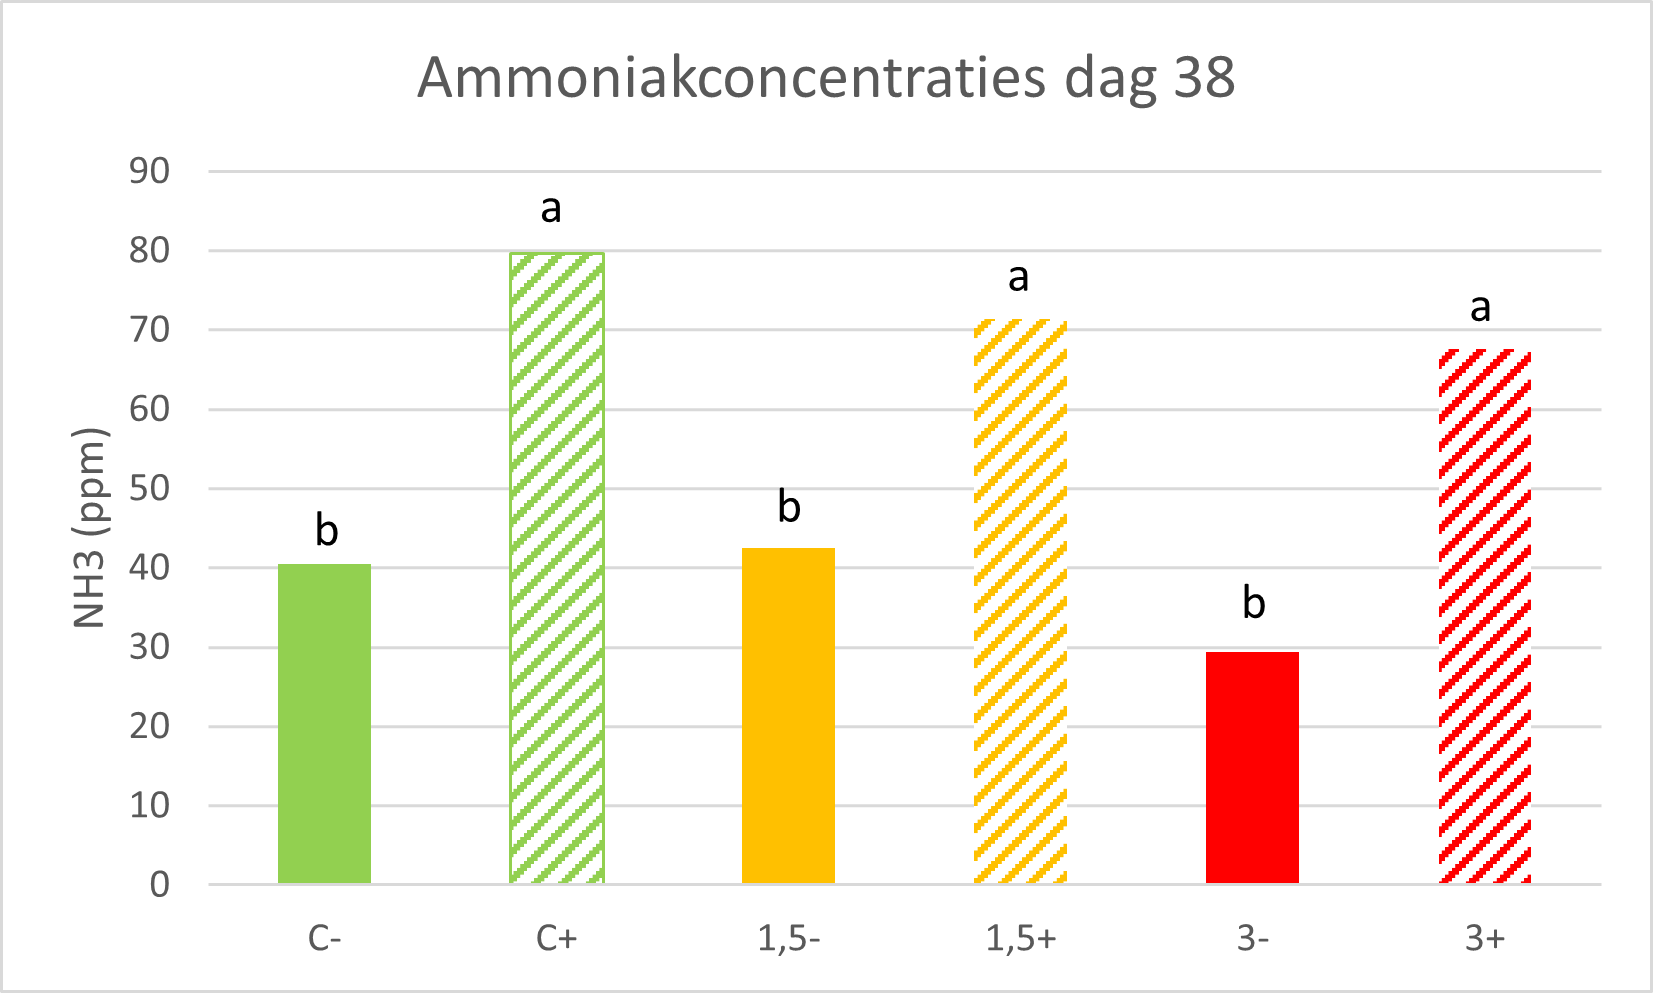 Ammoniakconcentraties dag38